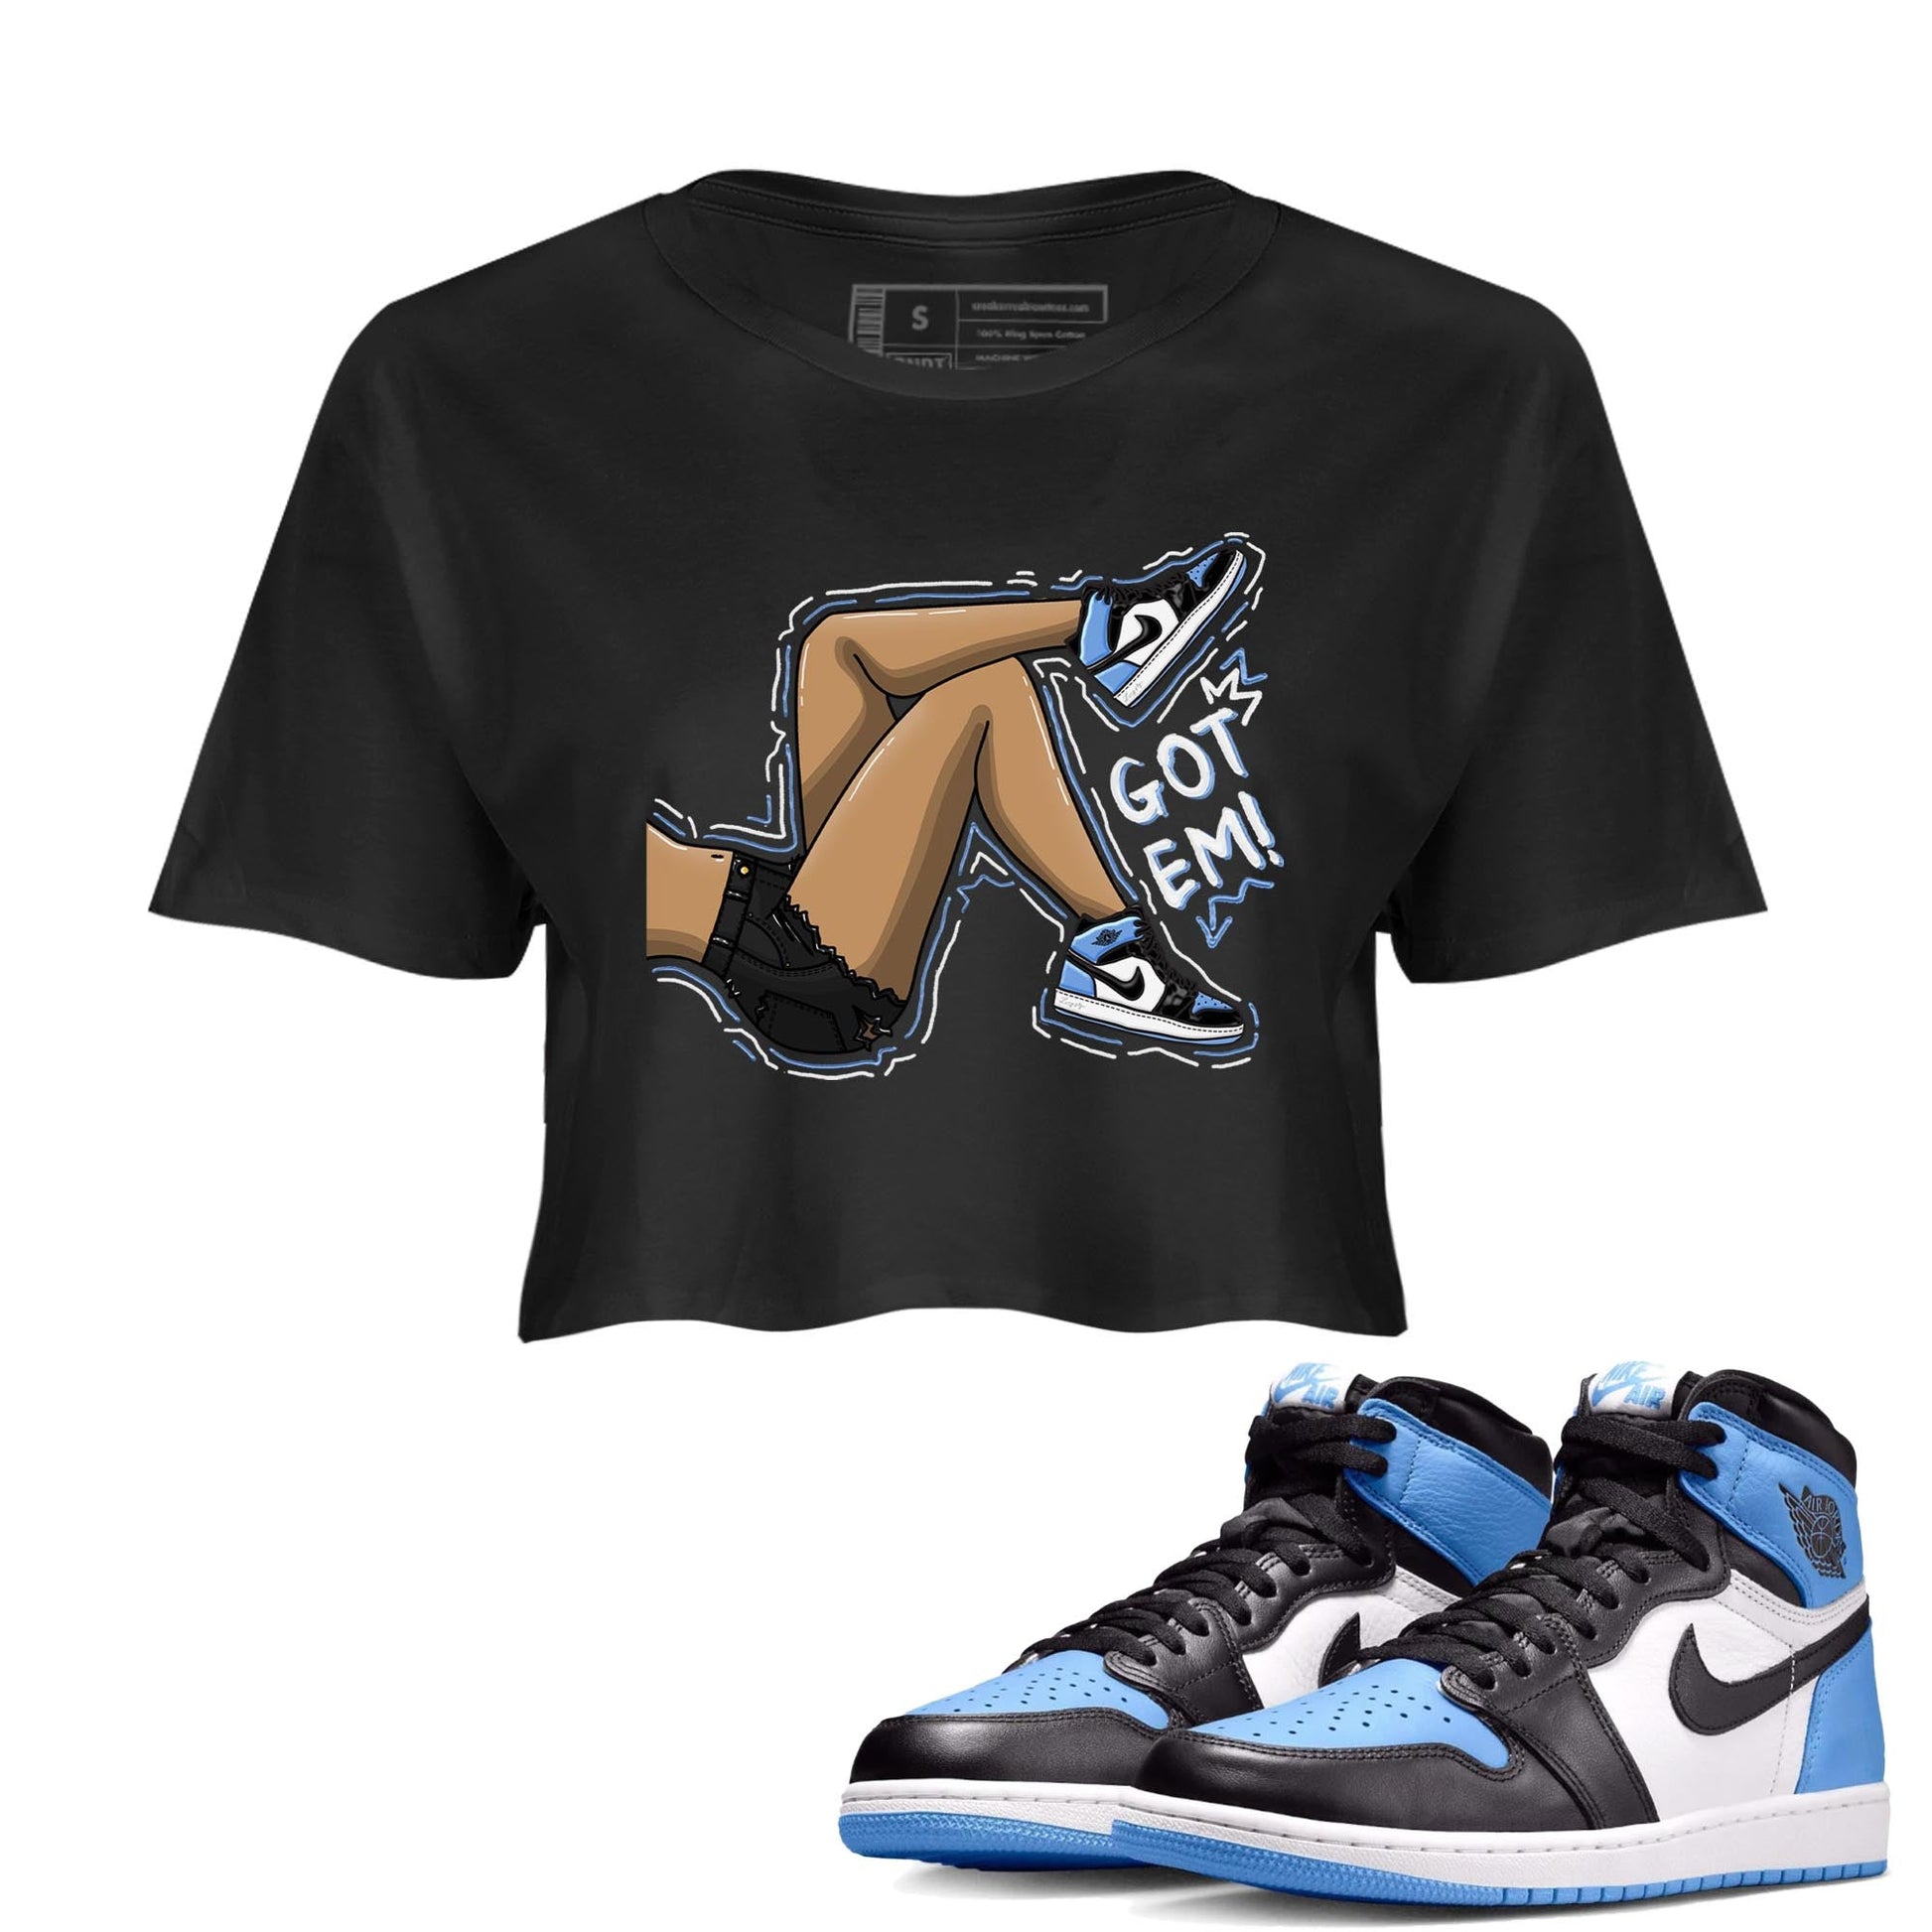 Air Jordan 1 Retro High OG University Blue shirt to match jordans Got Em Legs Streetwear Sneaker Shirt Air Jordan 1 UNC Toe Drip Gear Zone Sneaker Matching Clothing Black 1 Crop T-Shirt